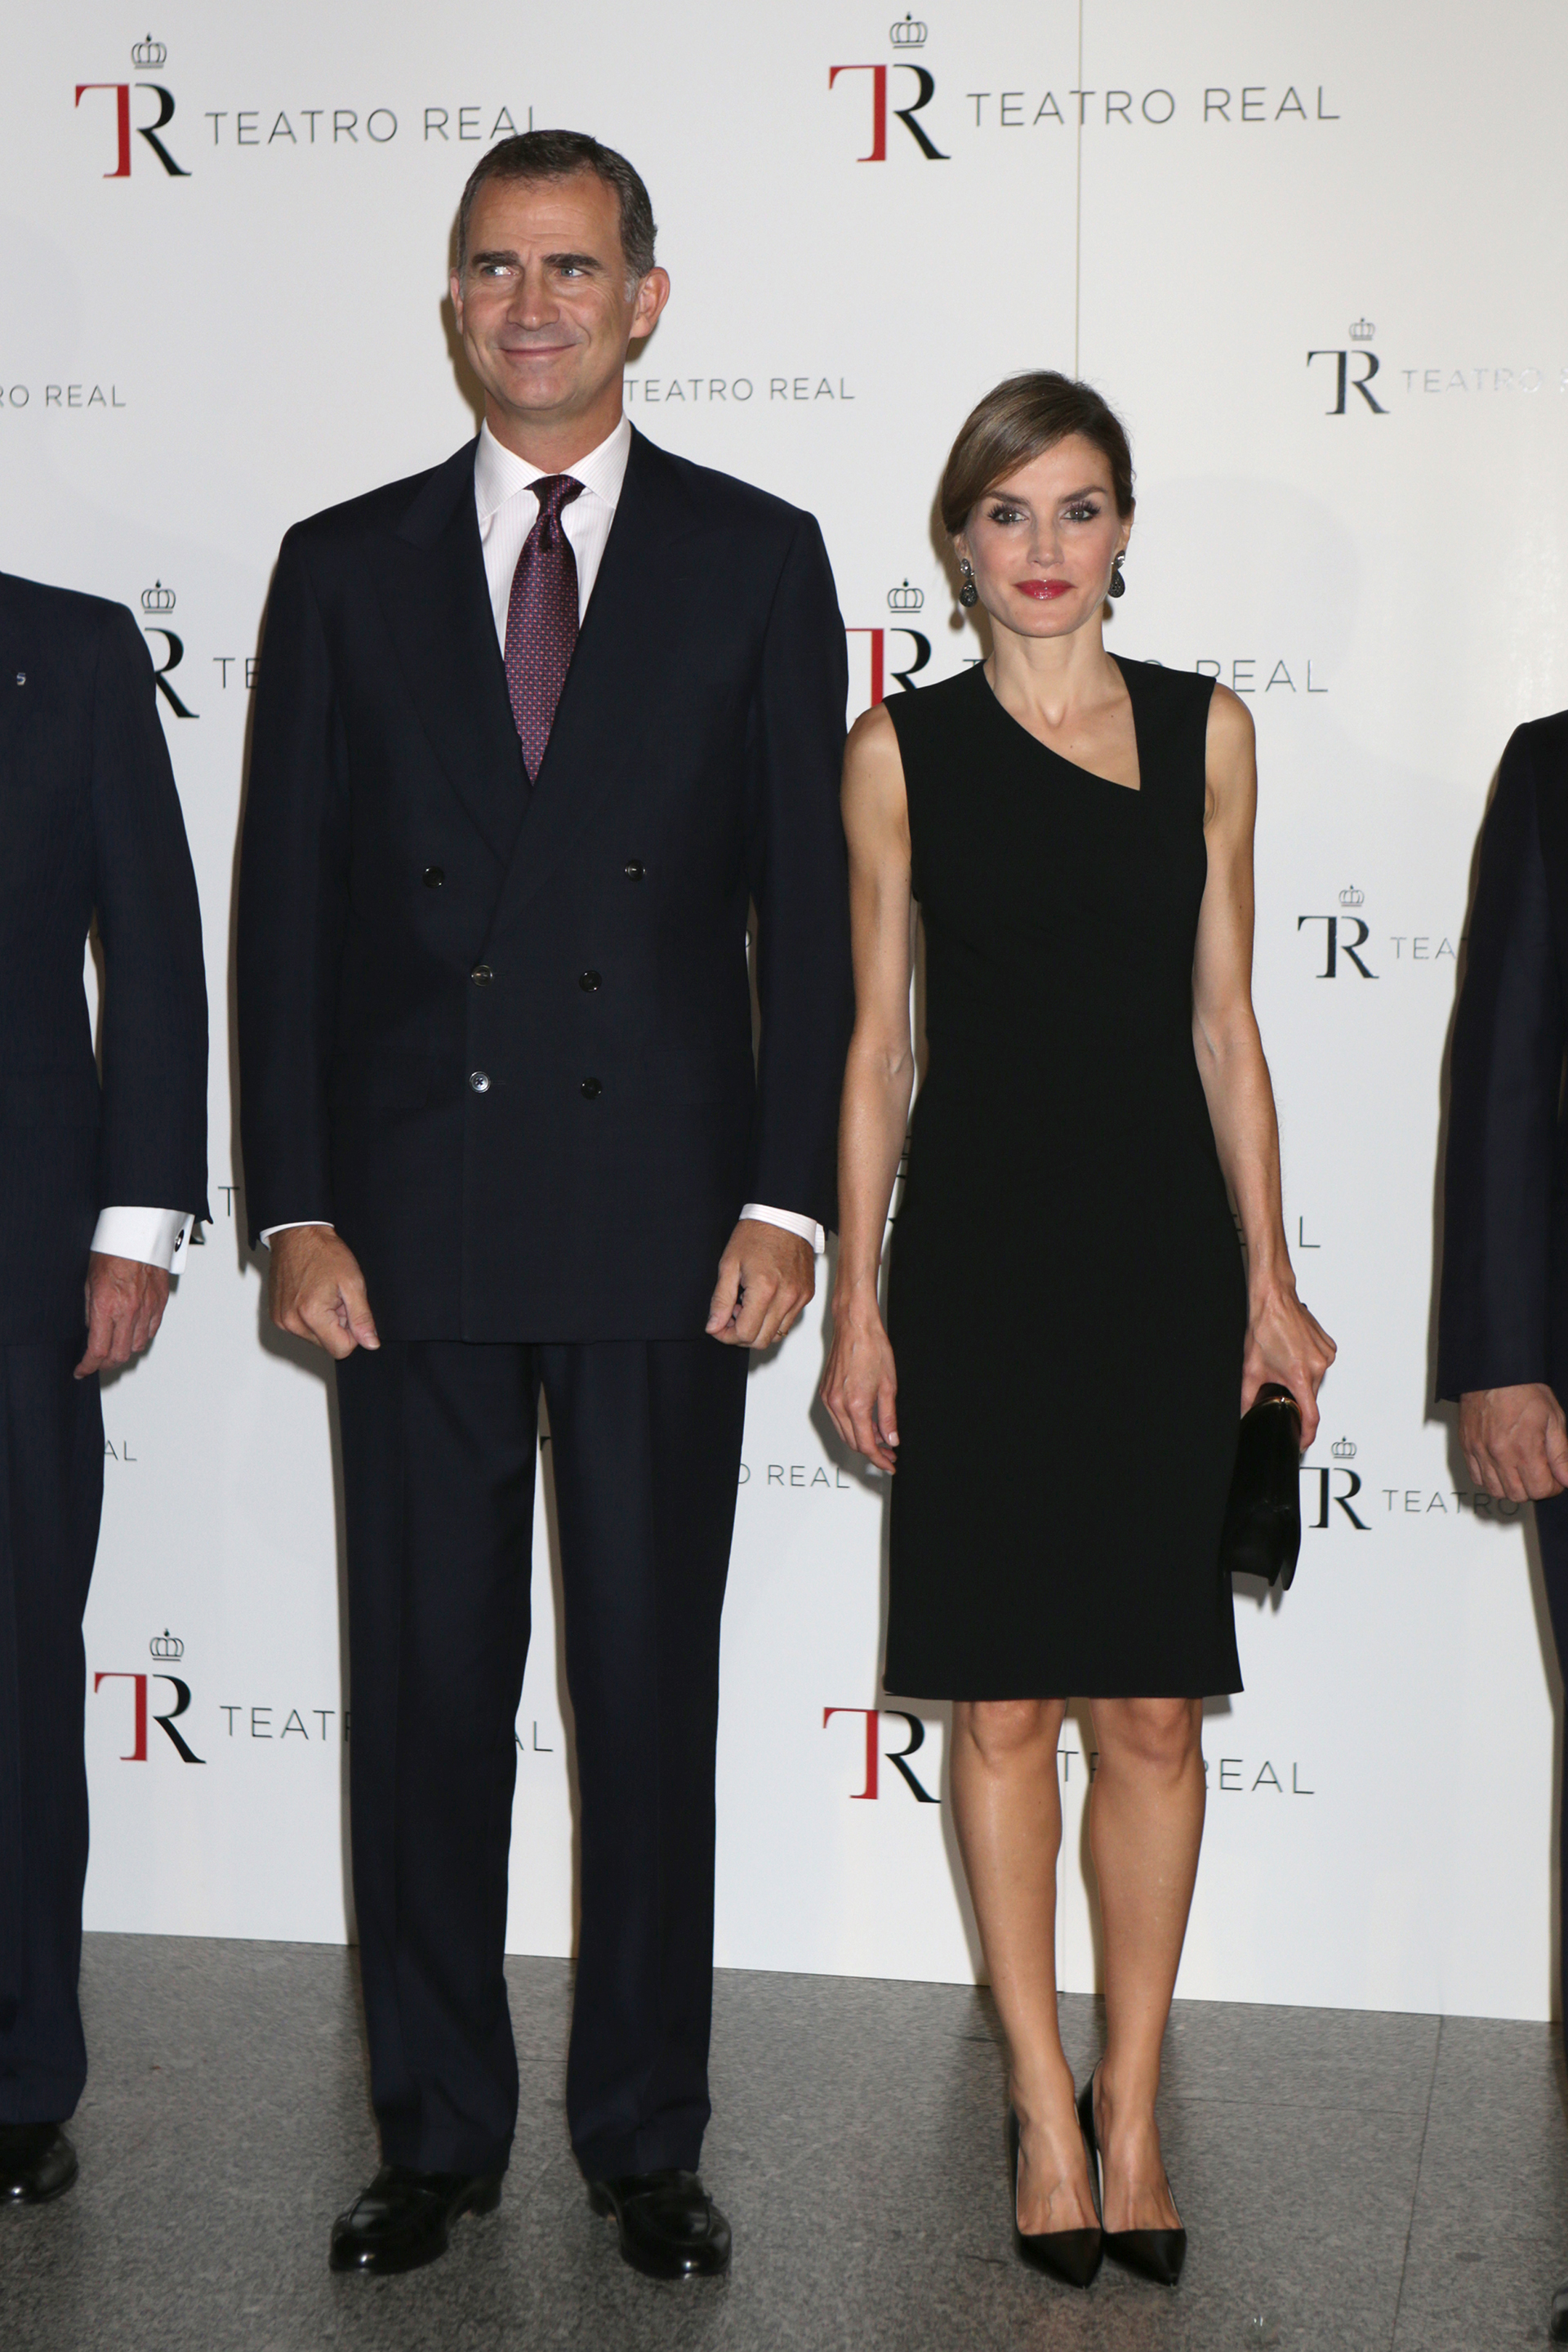 La Reina Letizia y Felipe VI en 2015 en el Teatro Real.